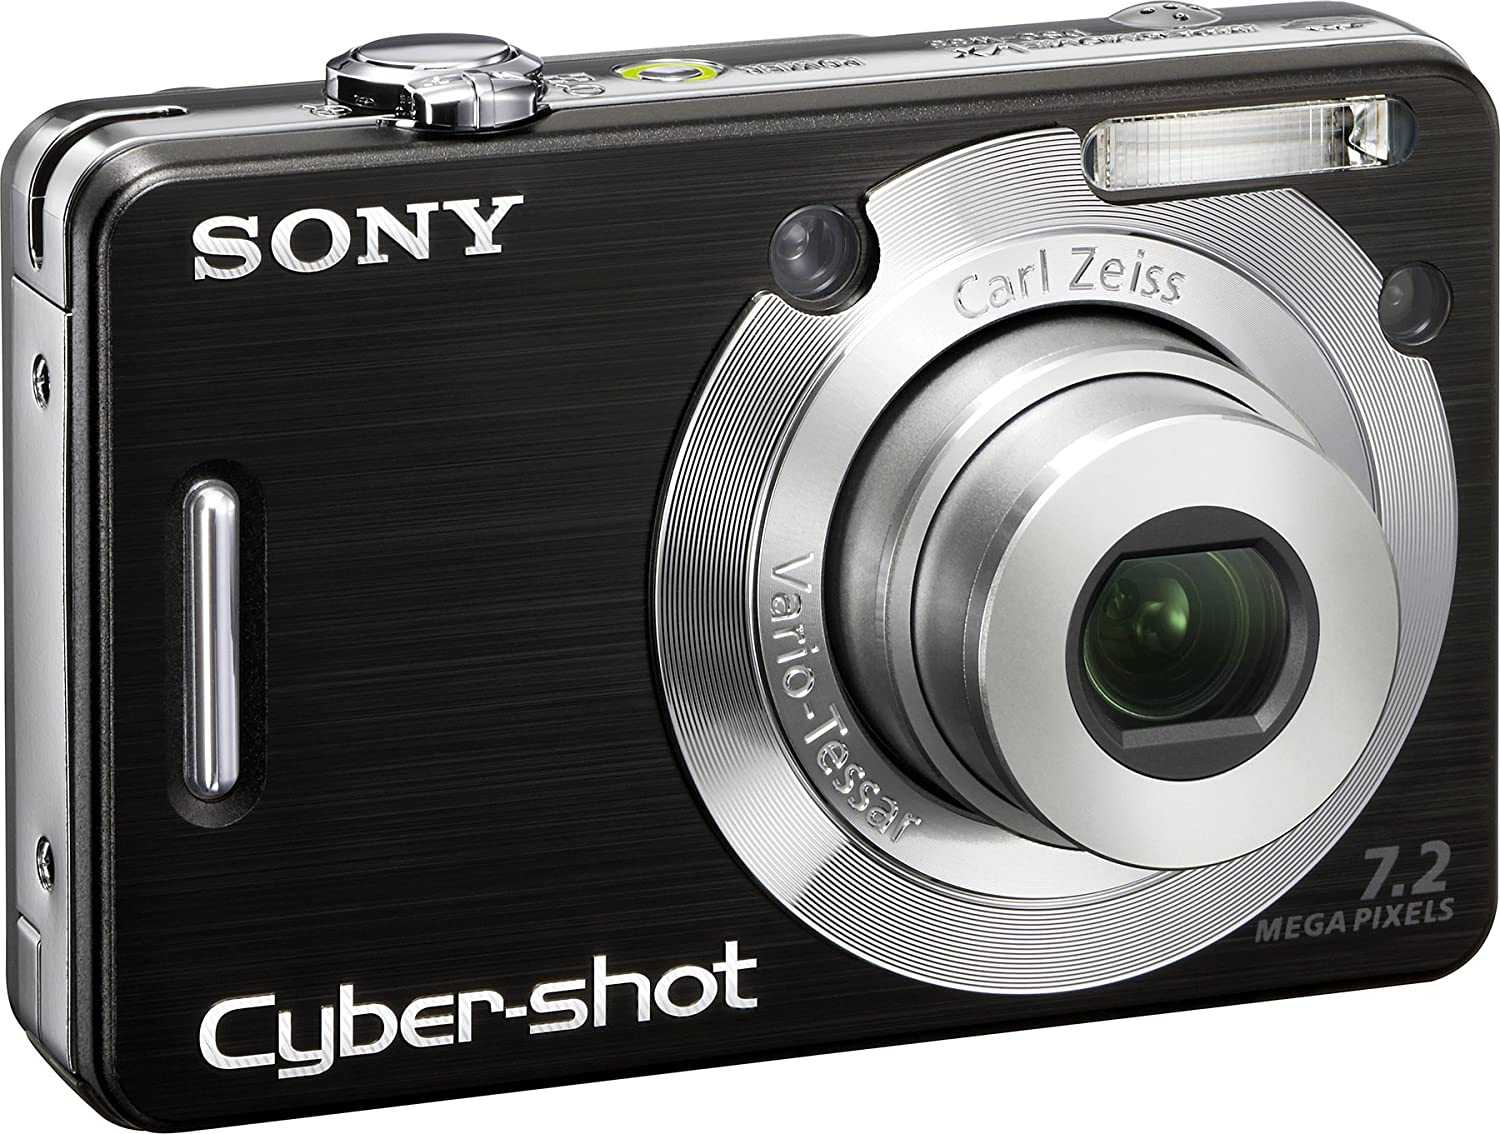 Sony cyber-shot dsc-w620 купить по акционной цене , отзывы и обзоры.